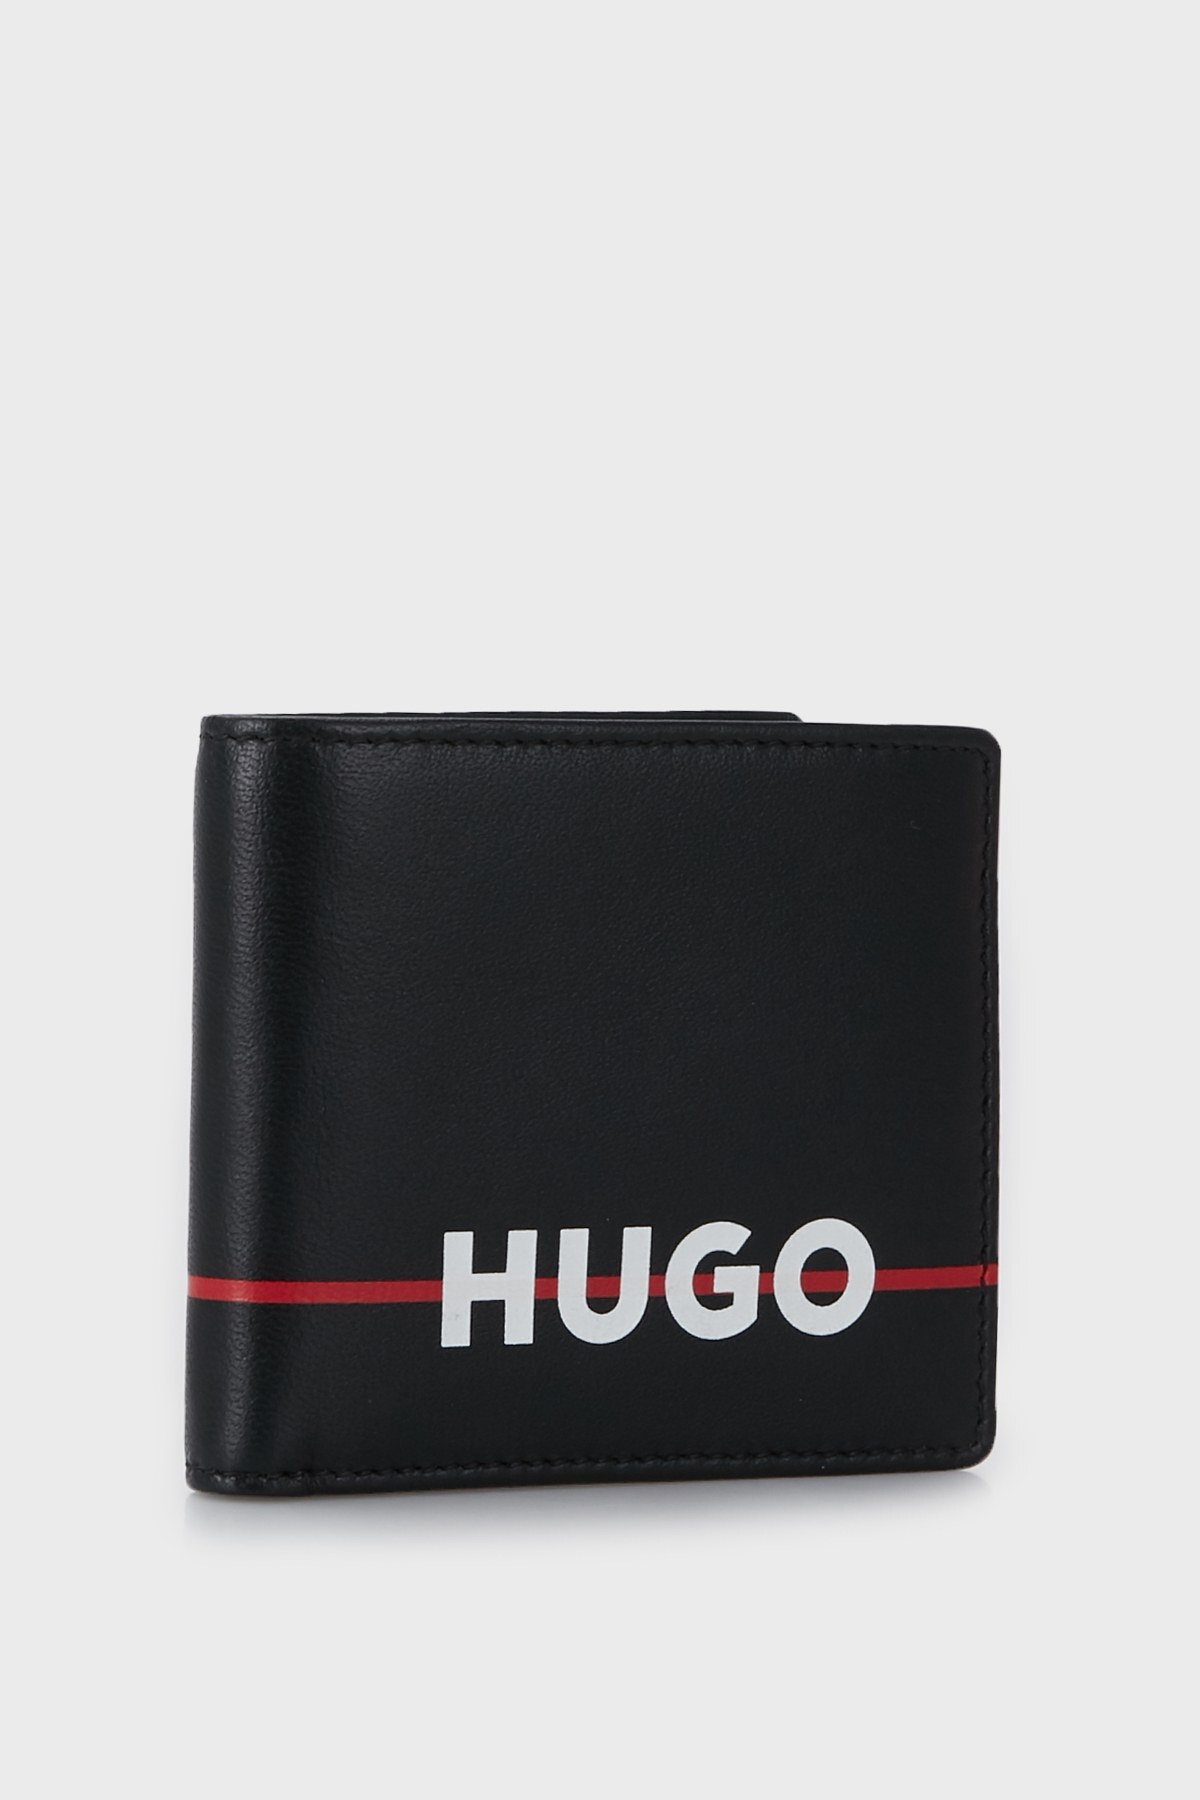 Hugo Logo Baskılı Erkek Cüzdan 50475049 001 SİYAH